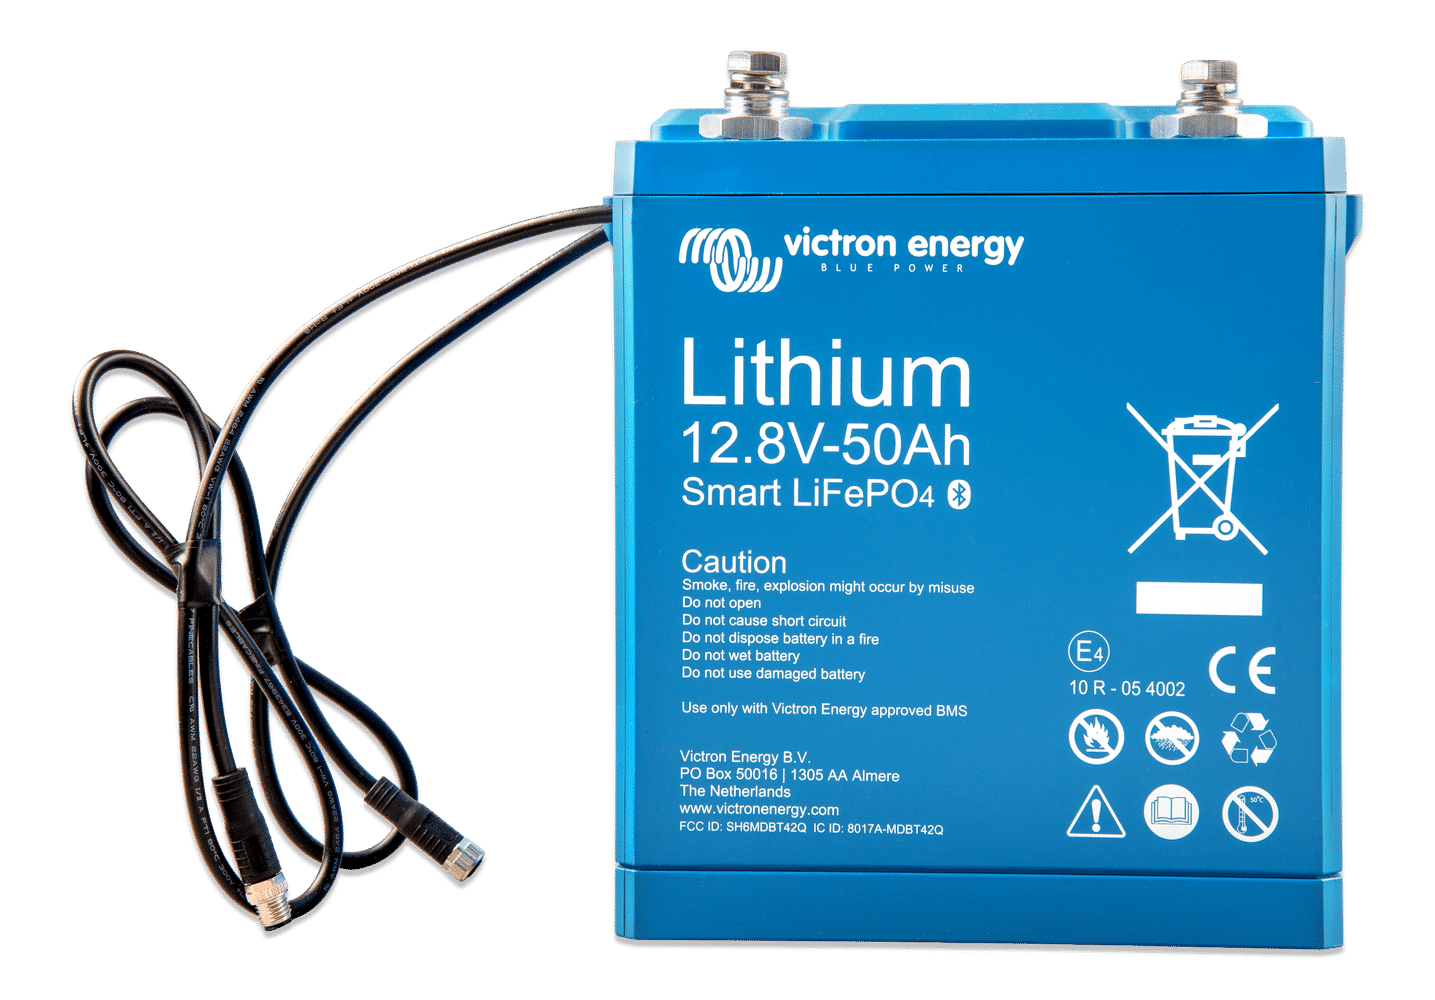 leninismen kredit rynker Lithium batterier - My Boat Electronics